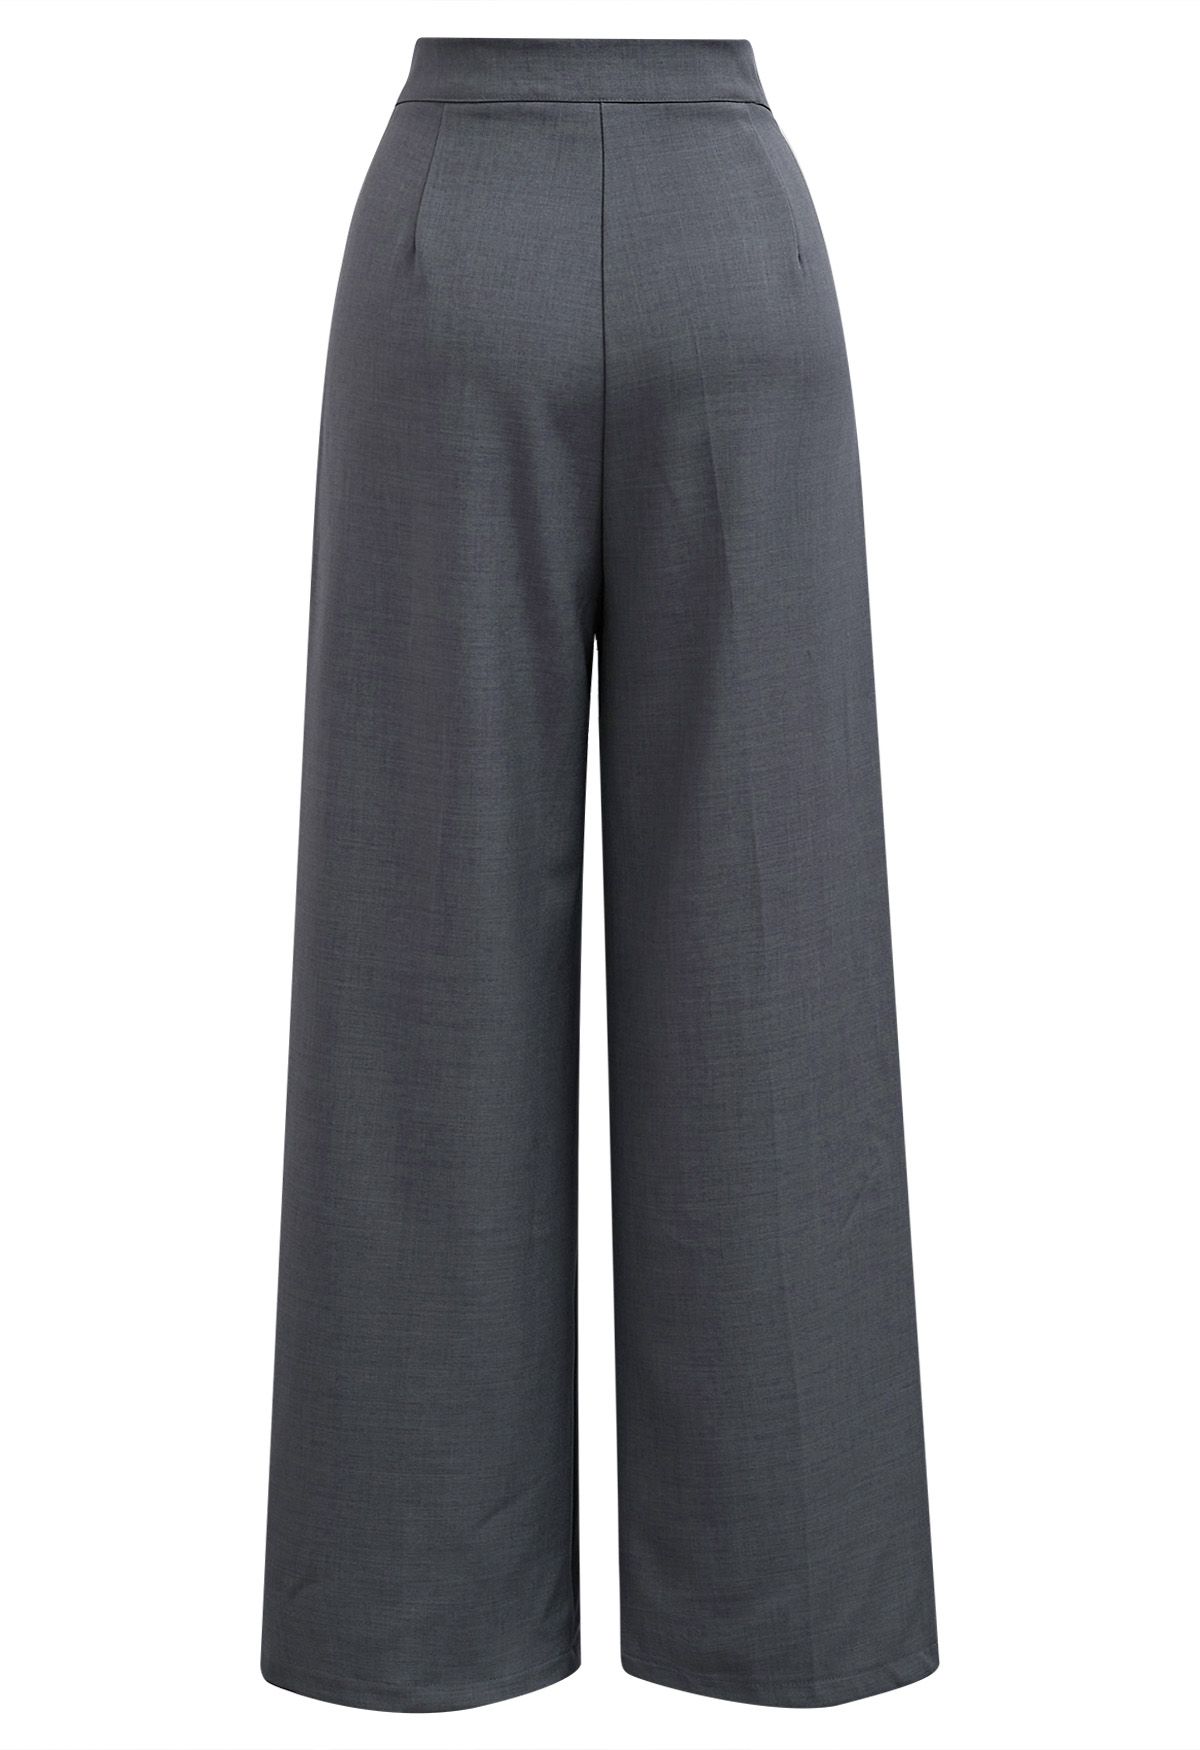 Pantalon large taille haute ceinturé uni en gris